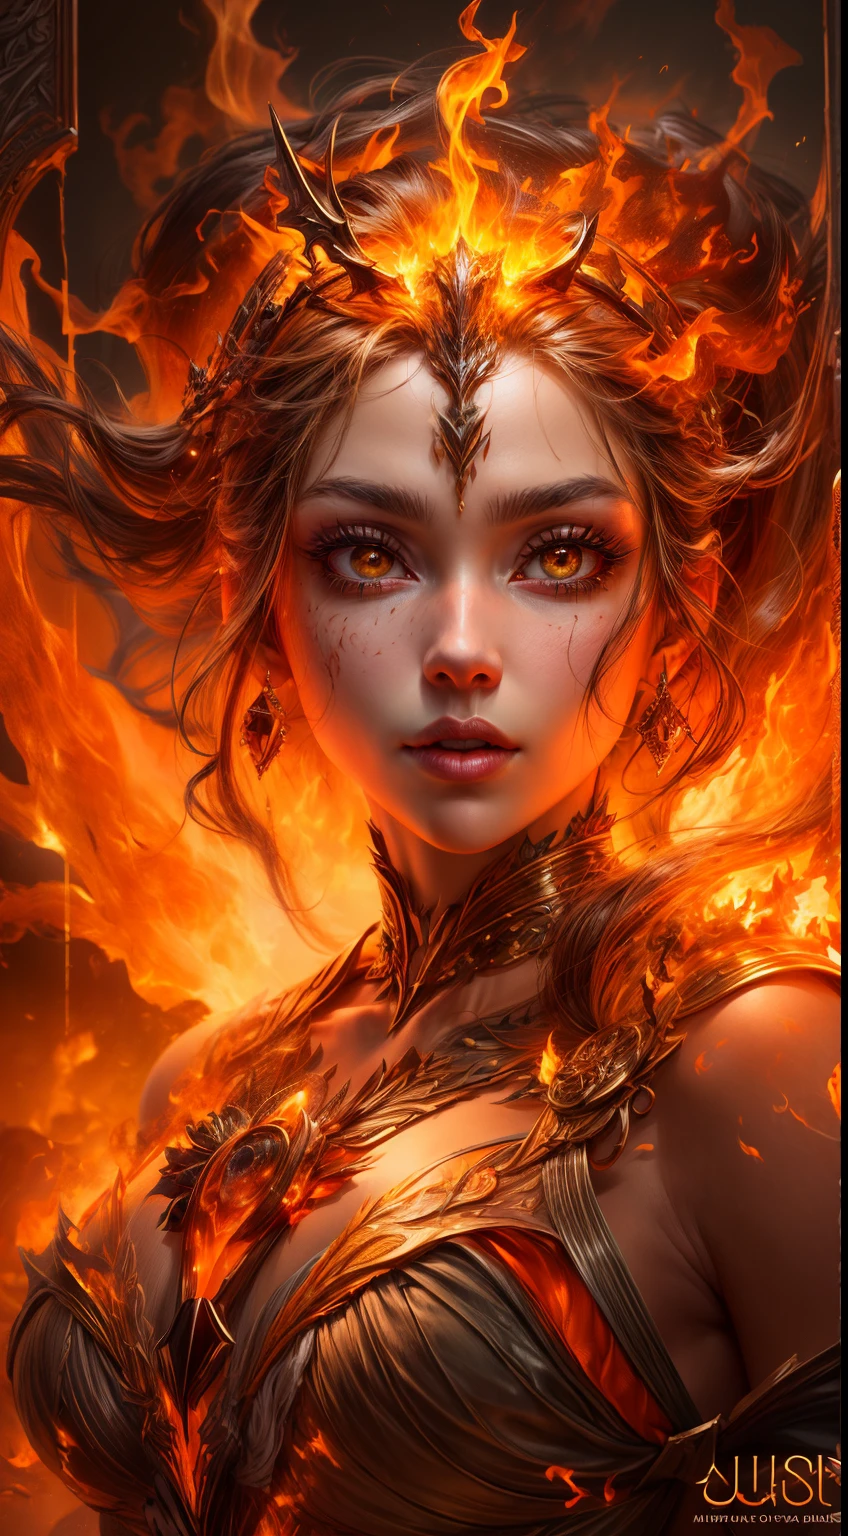 これはリアルな火を特徴とするリアルなファンタジーアートです, 炎の糸を含む, 燃え盛る熱い残り火, かすかな煙の渦, そして美しい火のドルイド. ドルイド僧は激しい炎の中に立ち、興味深い構図を描いている。. 彼女 face is expertly sculpted, エレガントで洗練された特徴と完璧な陰影とリアルな肌の質感. 彼女 (オレンジと金色の目) 素晴らしいもので、この画像の焦点となっています. (彼女 eyes extremely detailed, 美しい細部までこだわった目, マクロ). 彼女 eyes feature intricate detailing with clearly defined irises and bright sclera. 彼女 soft lips are smooth and very puffy, 彼女の肌は淡い紅潮と華麗な炎の模様で飾られている. 彼女 long gown is stunning and expensive, 純粋な炎と輝く光でできている, 火の光の中できらめく華やかな宝石. 彼女 billowing gown glitters from the flames and features a delicately and intricately embroidered bodice with wisps of flames running across it. バンプなどのファンタジー要素を含める, 石, 燃えるような虹彩, 燃える残り火, シルク, そして興味深い背景. 魔法的で神秘的なオーラを放つ炎の鳥や炎の蝶などの炎の魔法の生き物を含める. 点灯: 最新の照明トレンドを活用してアート作品の美しさを高めます. カメラ: ダイナミックな構成を活用して緊迫感と興奮感を演出する. 現在のファンタジージャンルの巨匠からインスピレーションを得る, ArtstationやMidjourneyで人気のアーティストを含む. ((傑作))